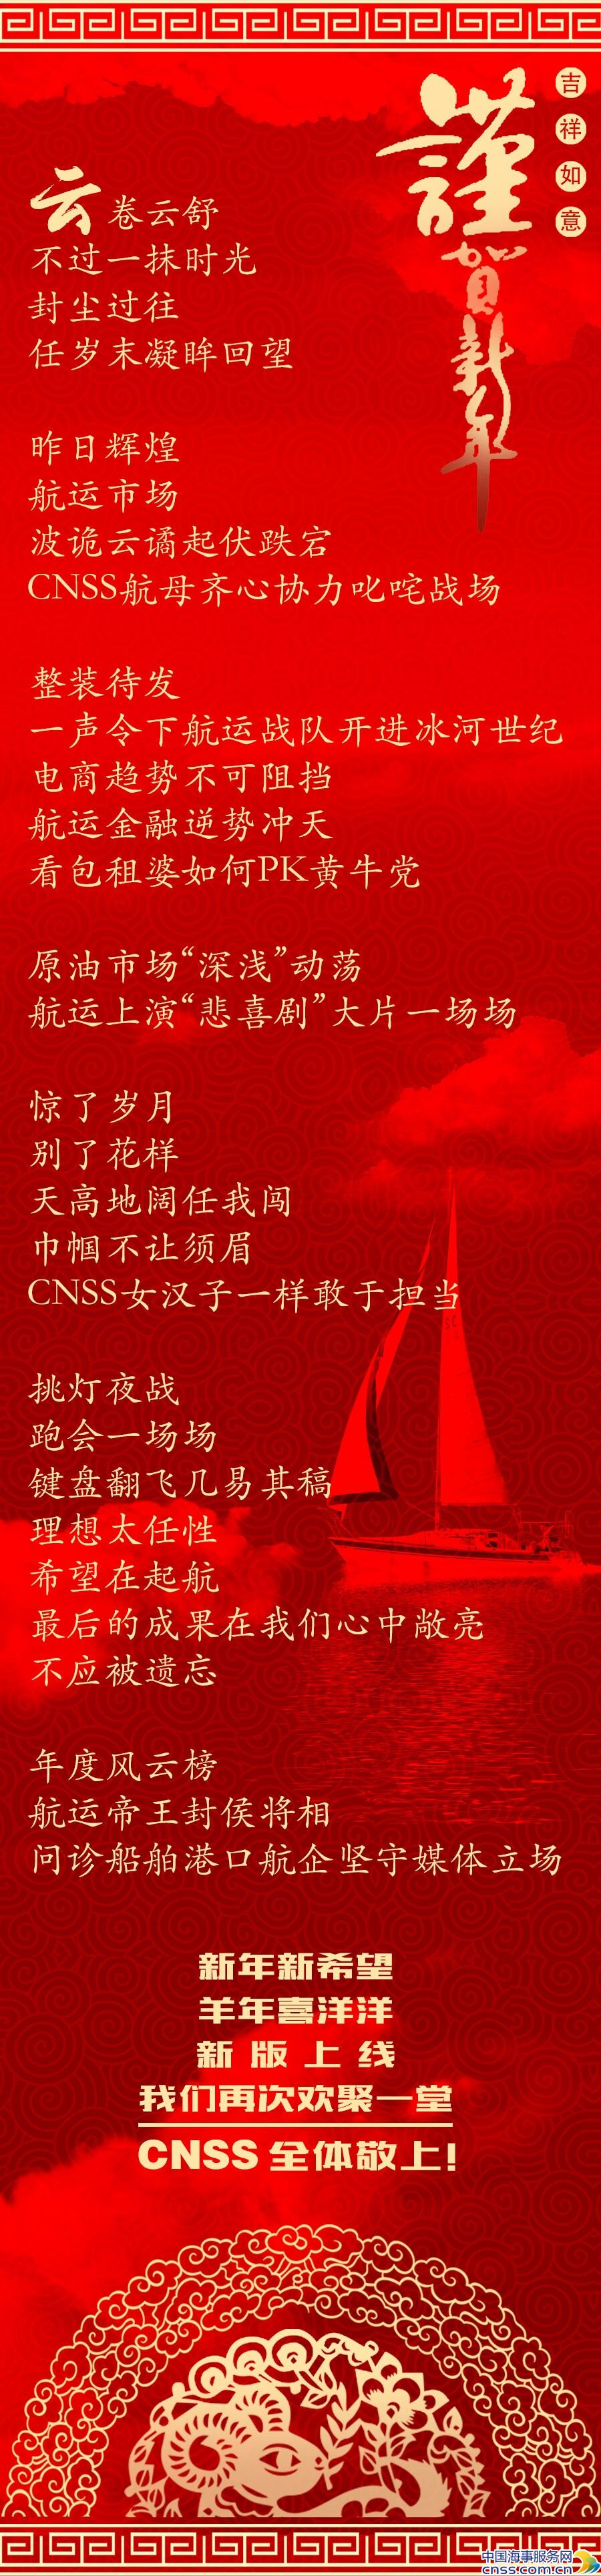 中国海事服务网祝您乙未年吉祥如意！